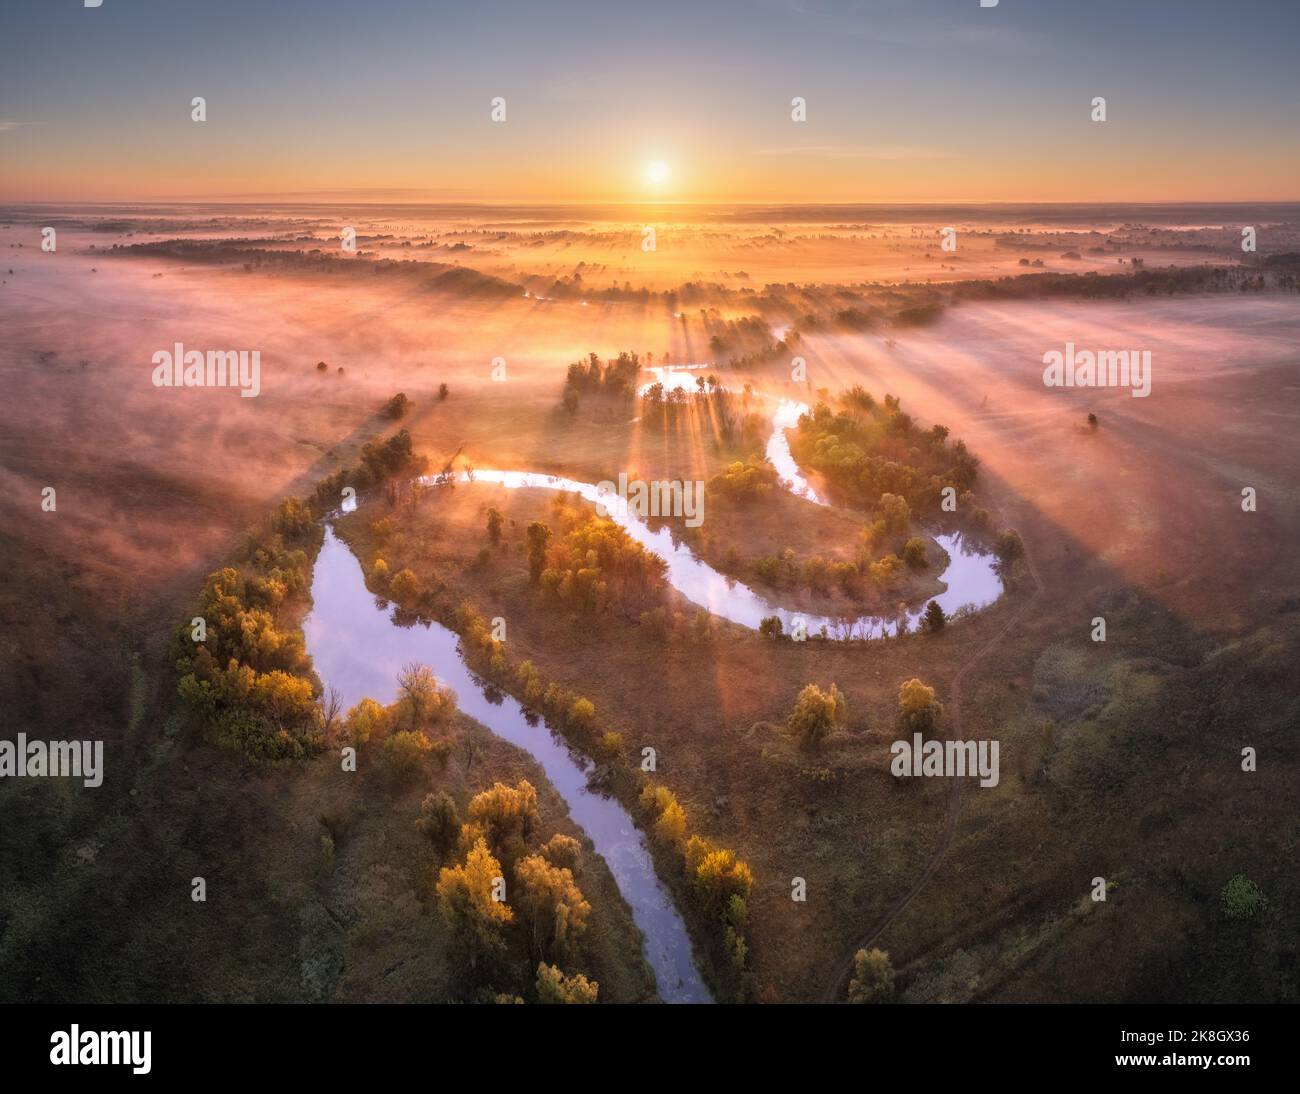 Vista aerea del bel fiume curvo nelle nuvole basse all'alba Foto Stock